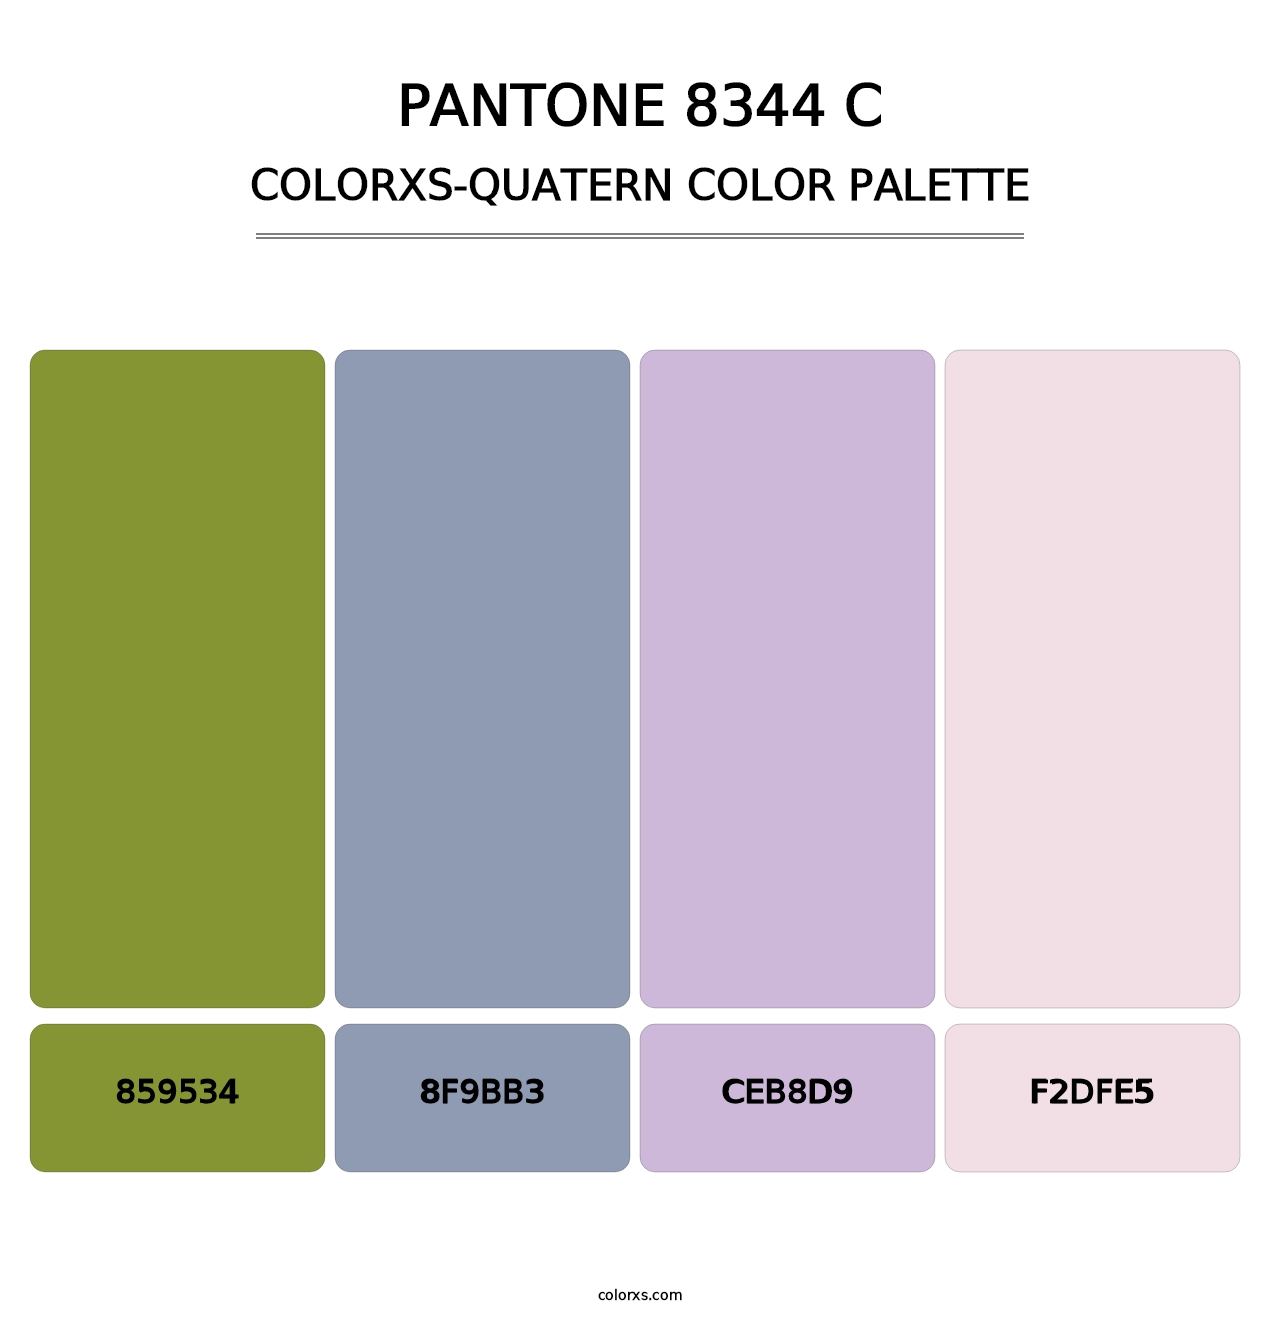 PANTONE 8344 C - Colorxs Quatern Palette